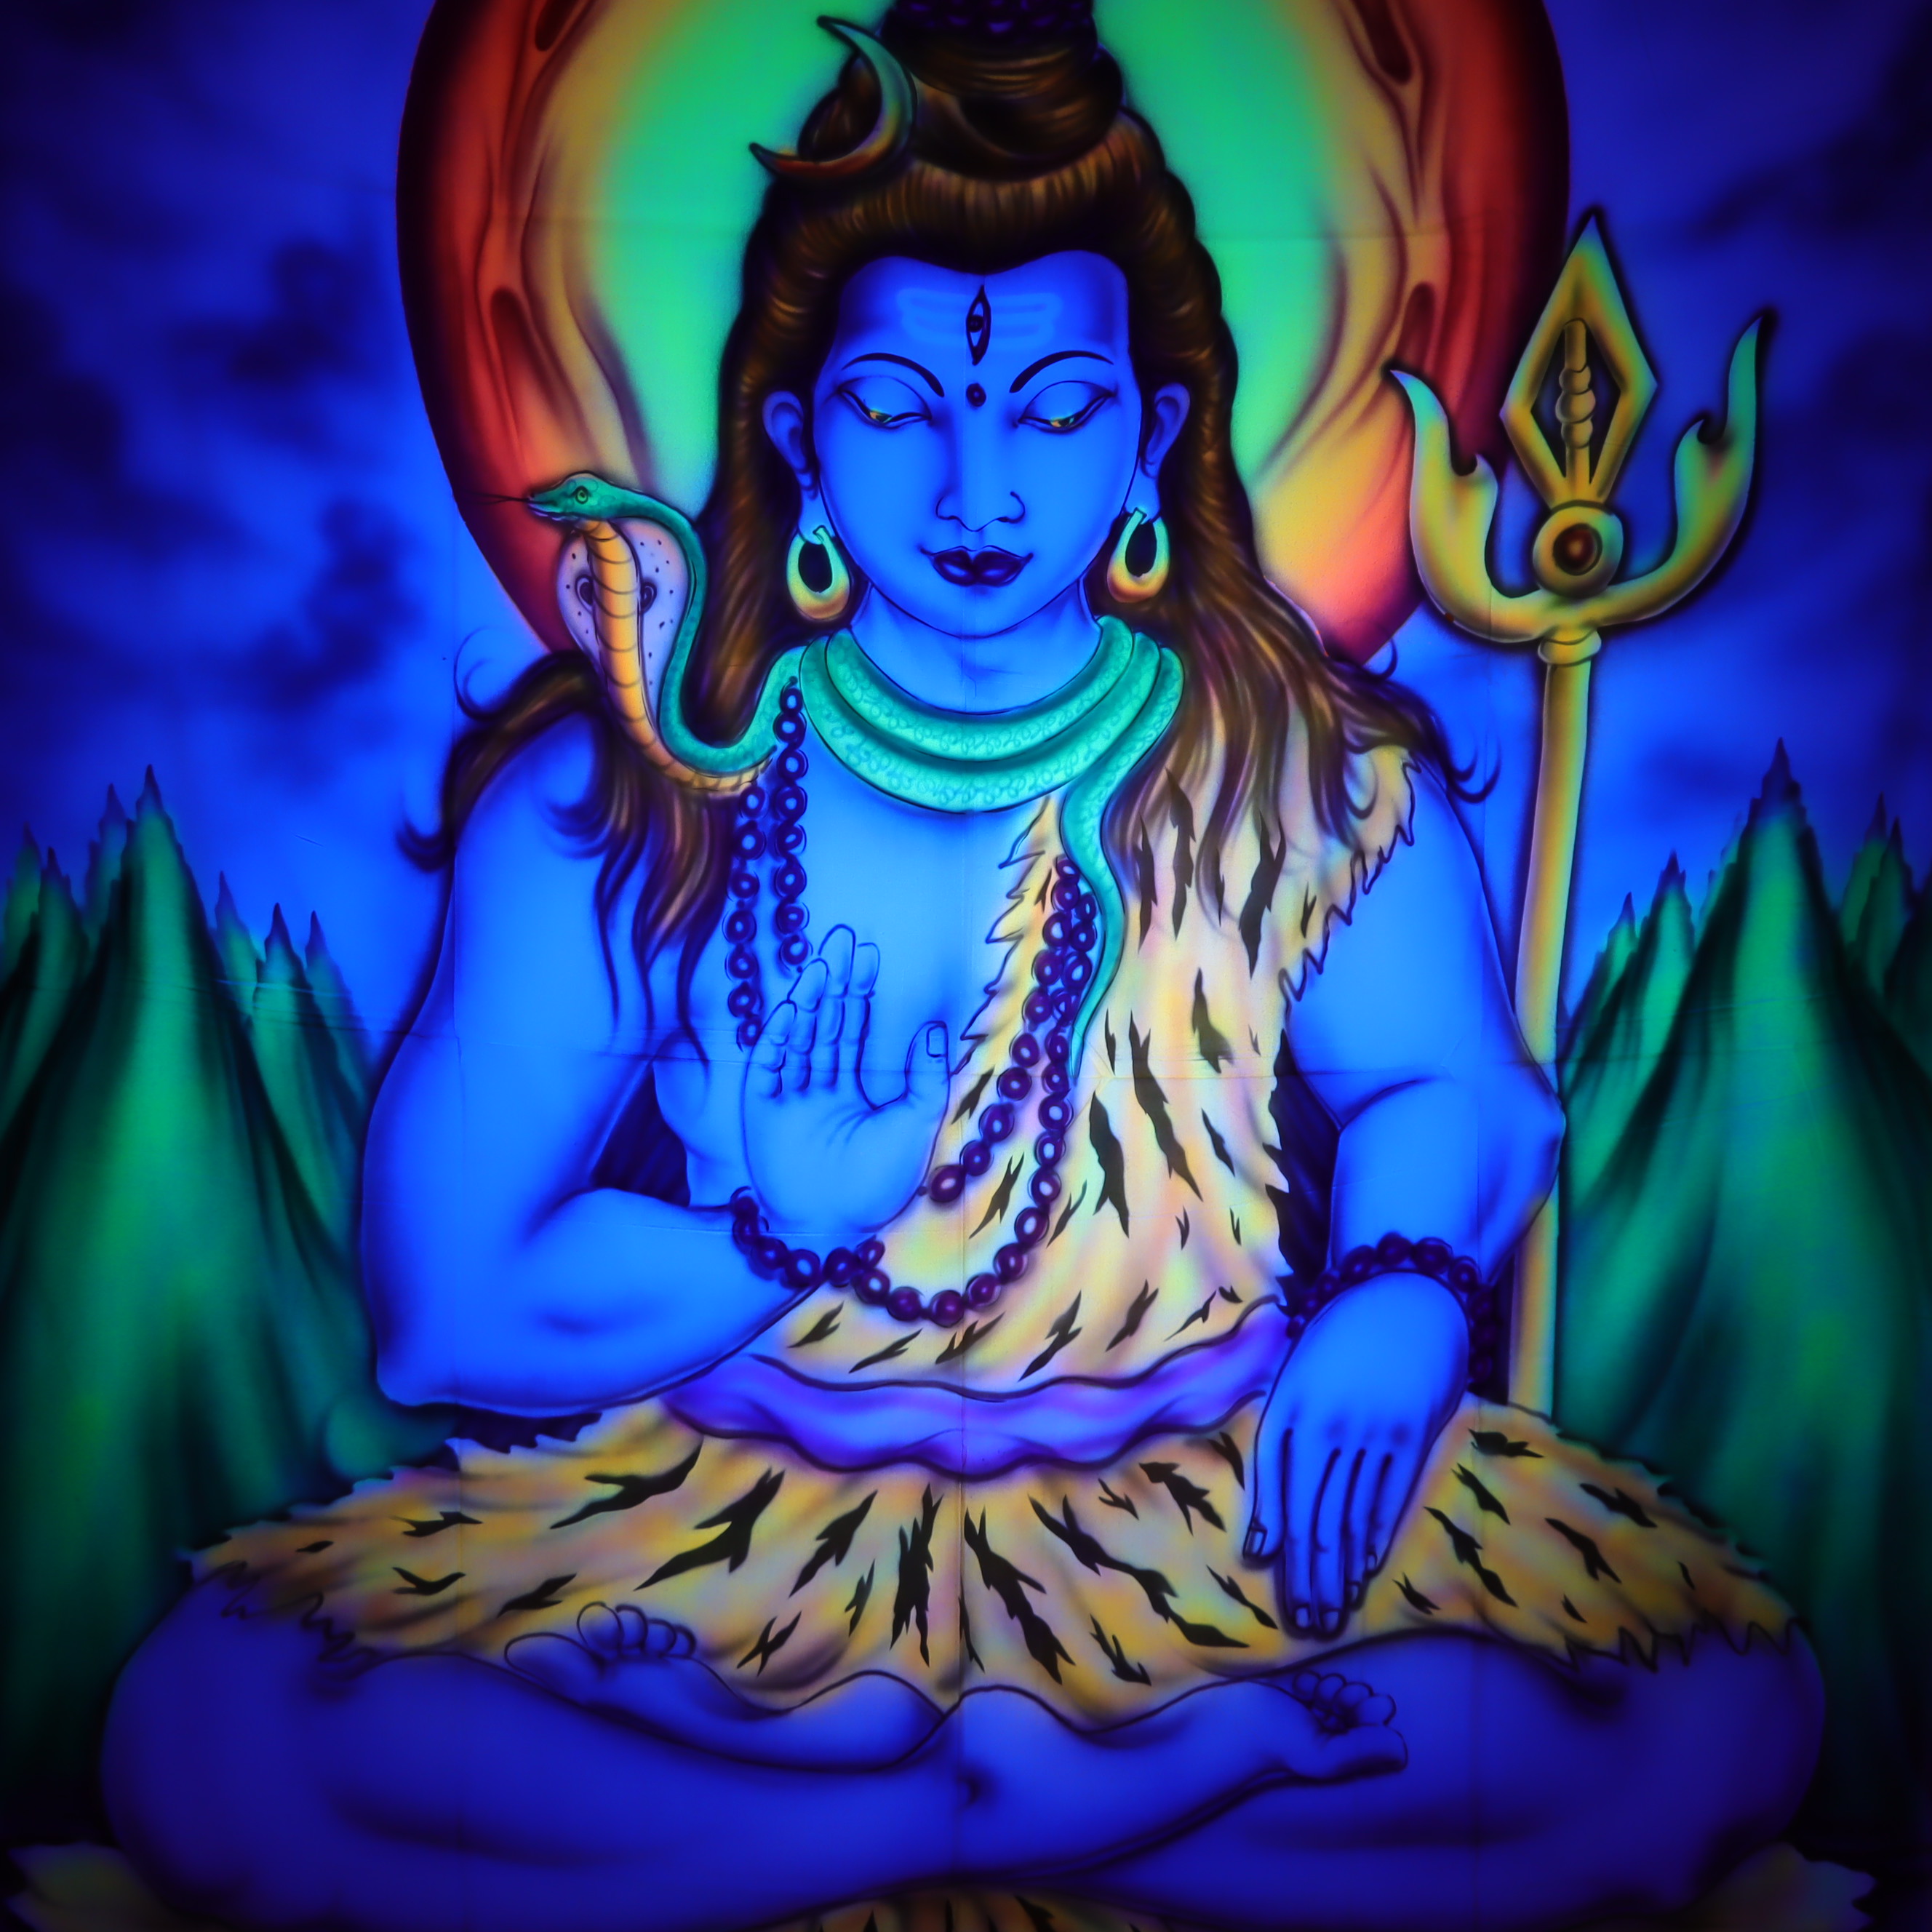 Wandtuch L 120x190 - Shiva der Glückverheißende - aufwendig handgemaltes Schwarzlicht-Tuch - mehrfarbig & UV-aktiv